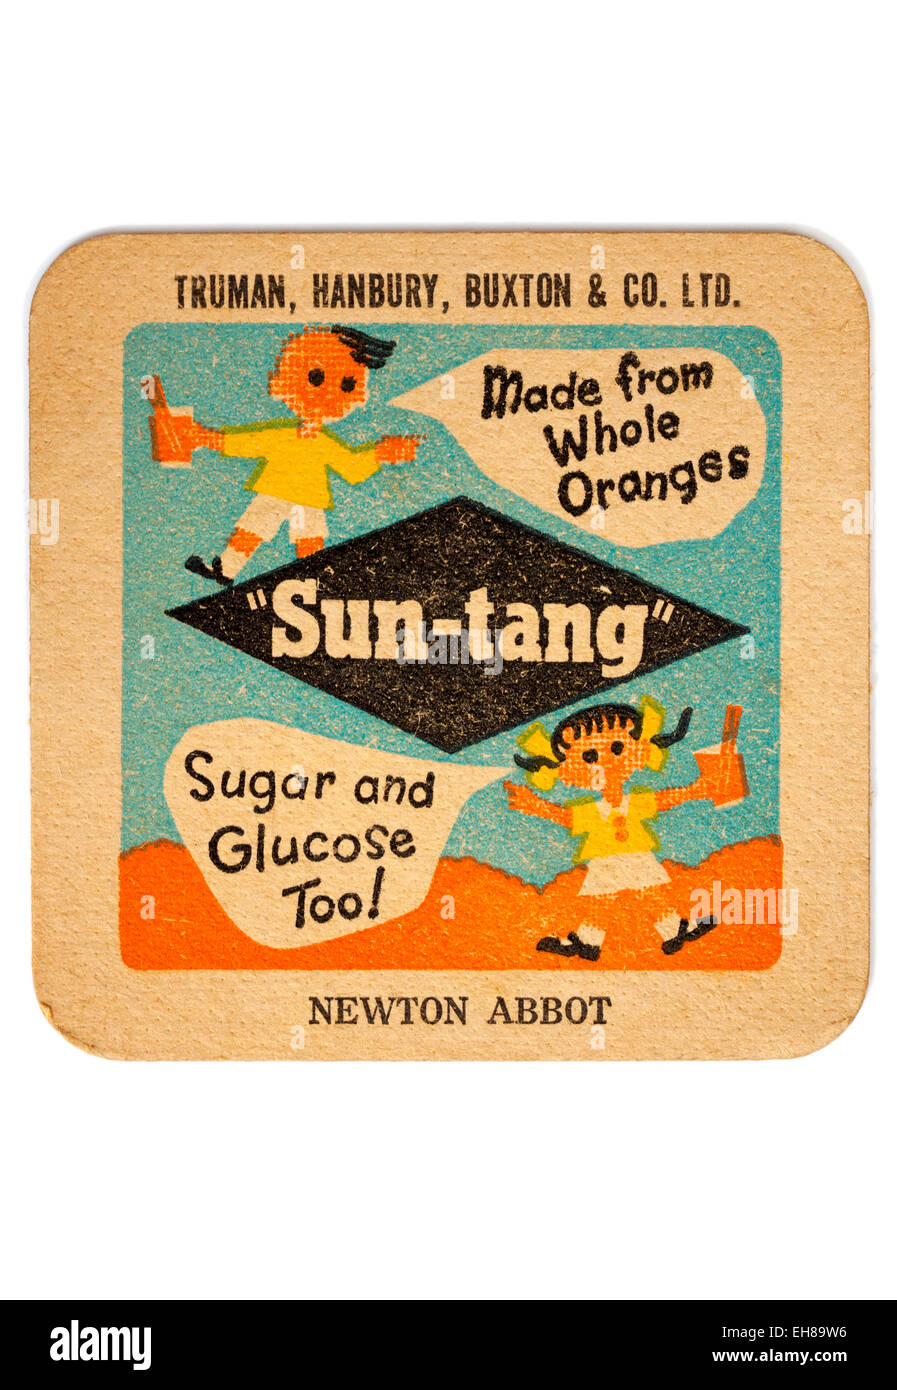 Vintage Publicidad Beermat Sun-Tang Refrescos desde Truman Hanbury y cervecerías Buxton Foto de stock